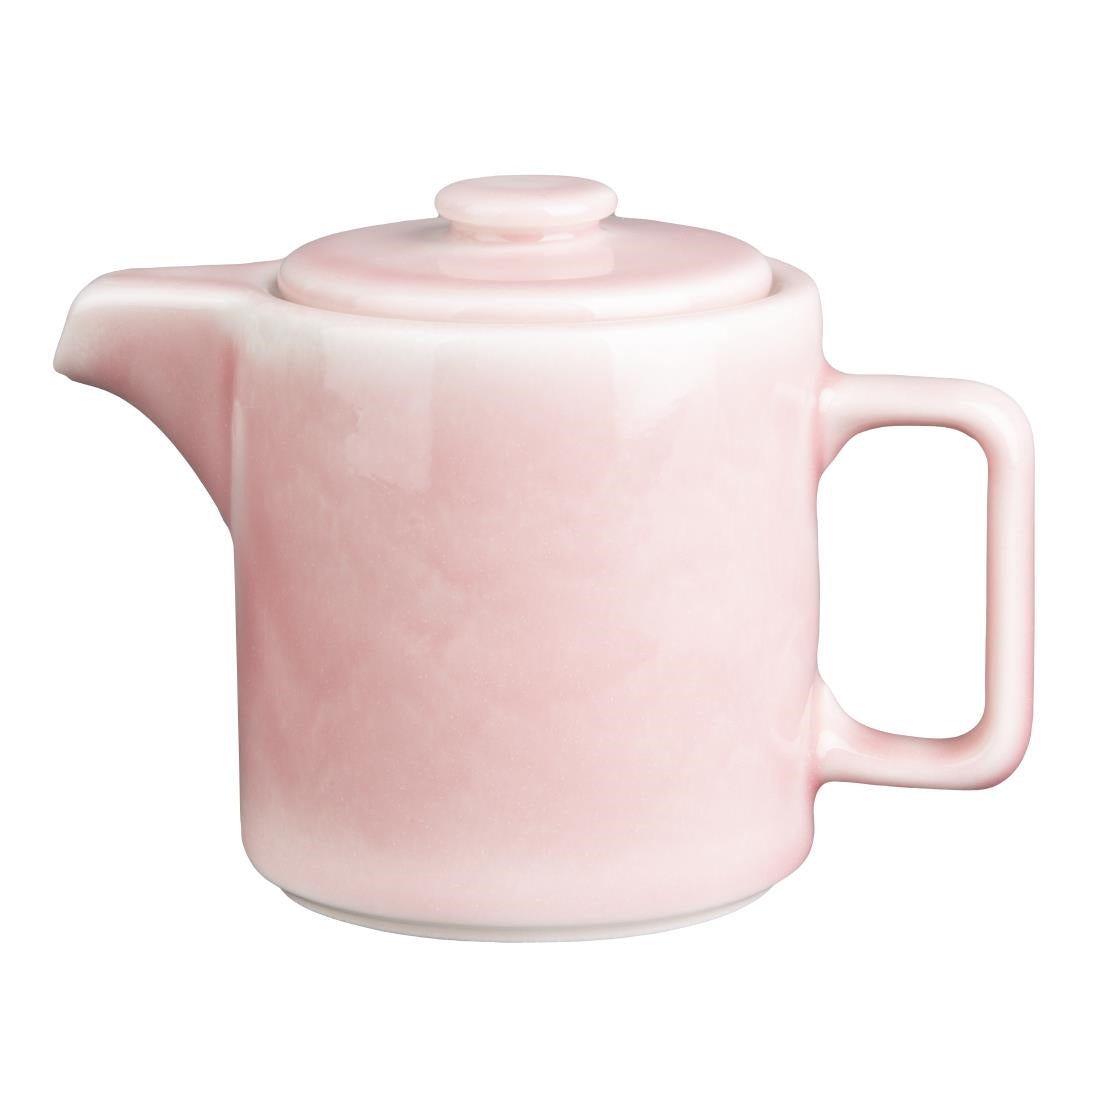 CU457 Olympia Fondant Tea Pot Pink - 450ml 15.2fl oz (Box 2) JD Catering Equipment Solutions Ltd